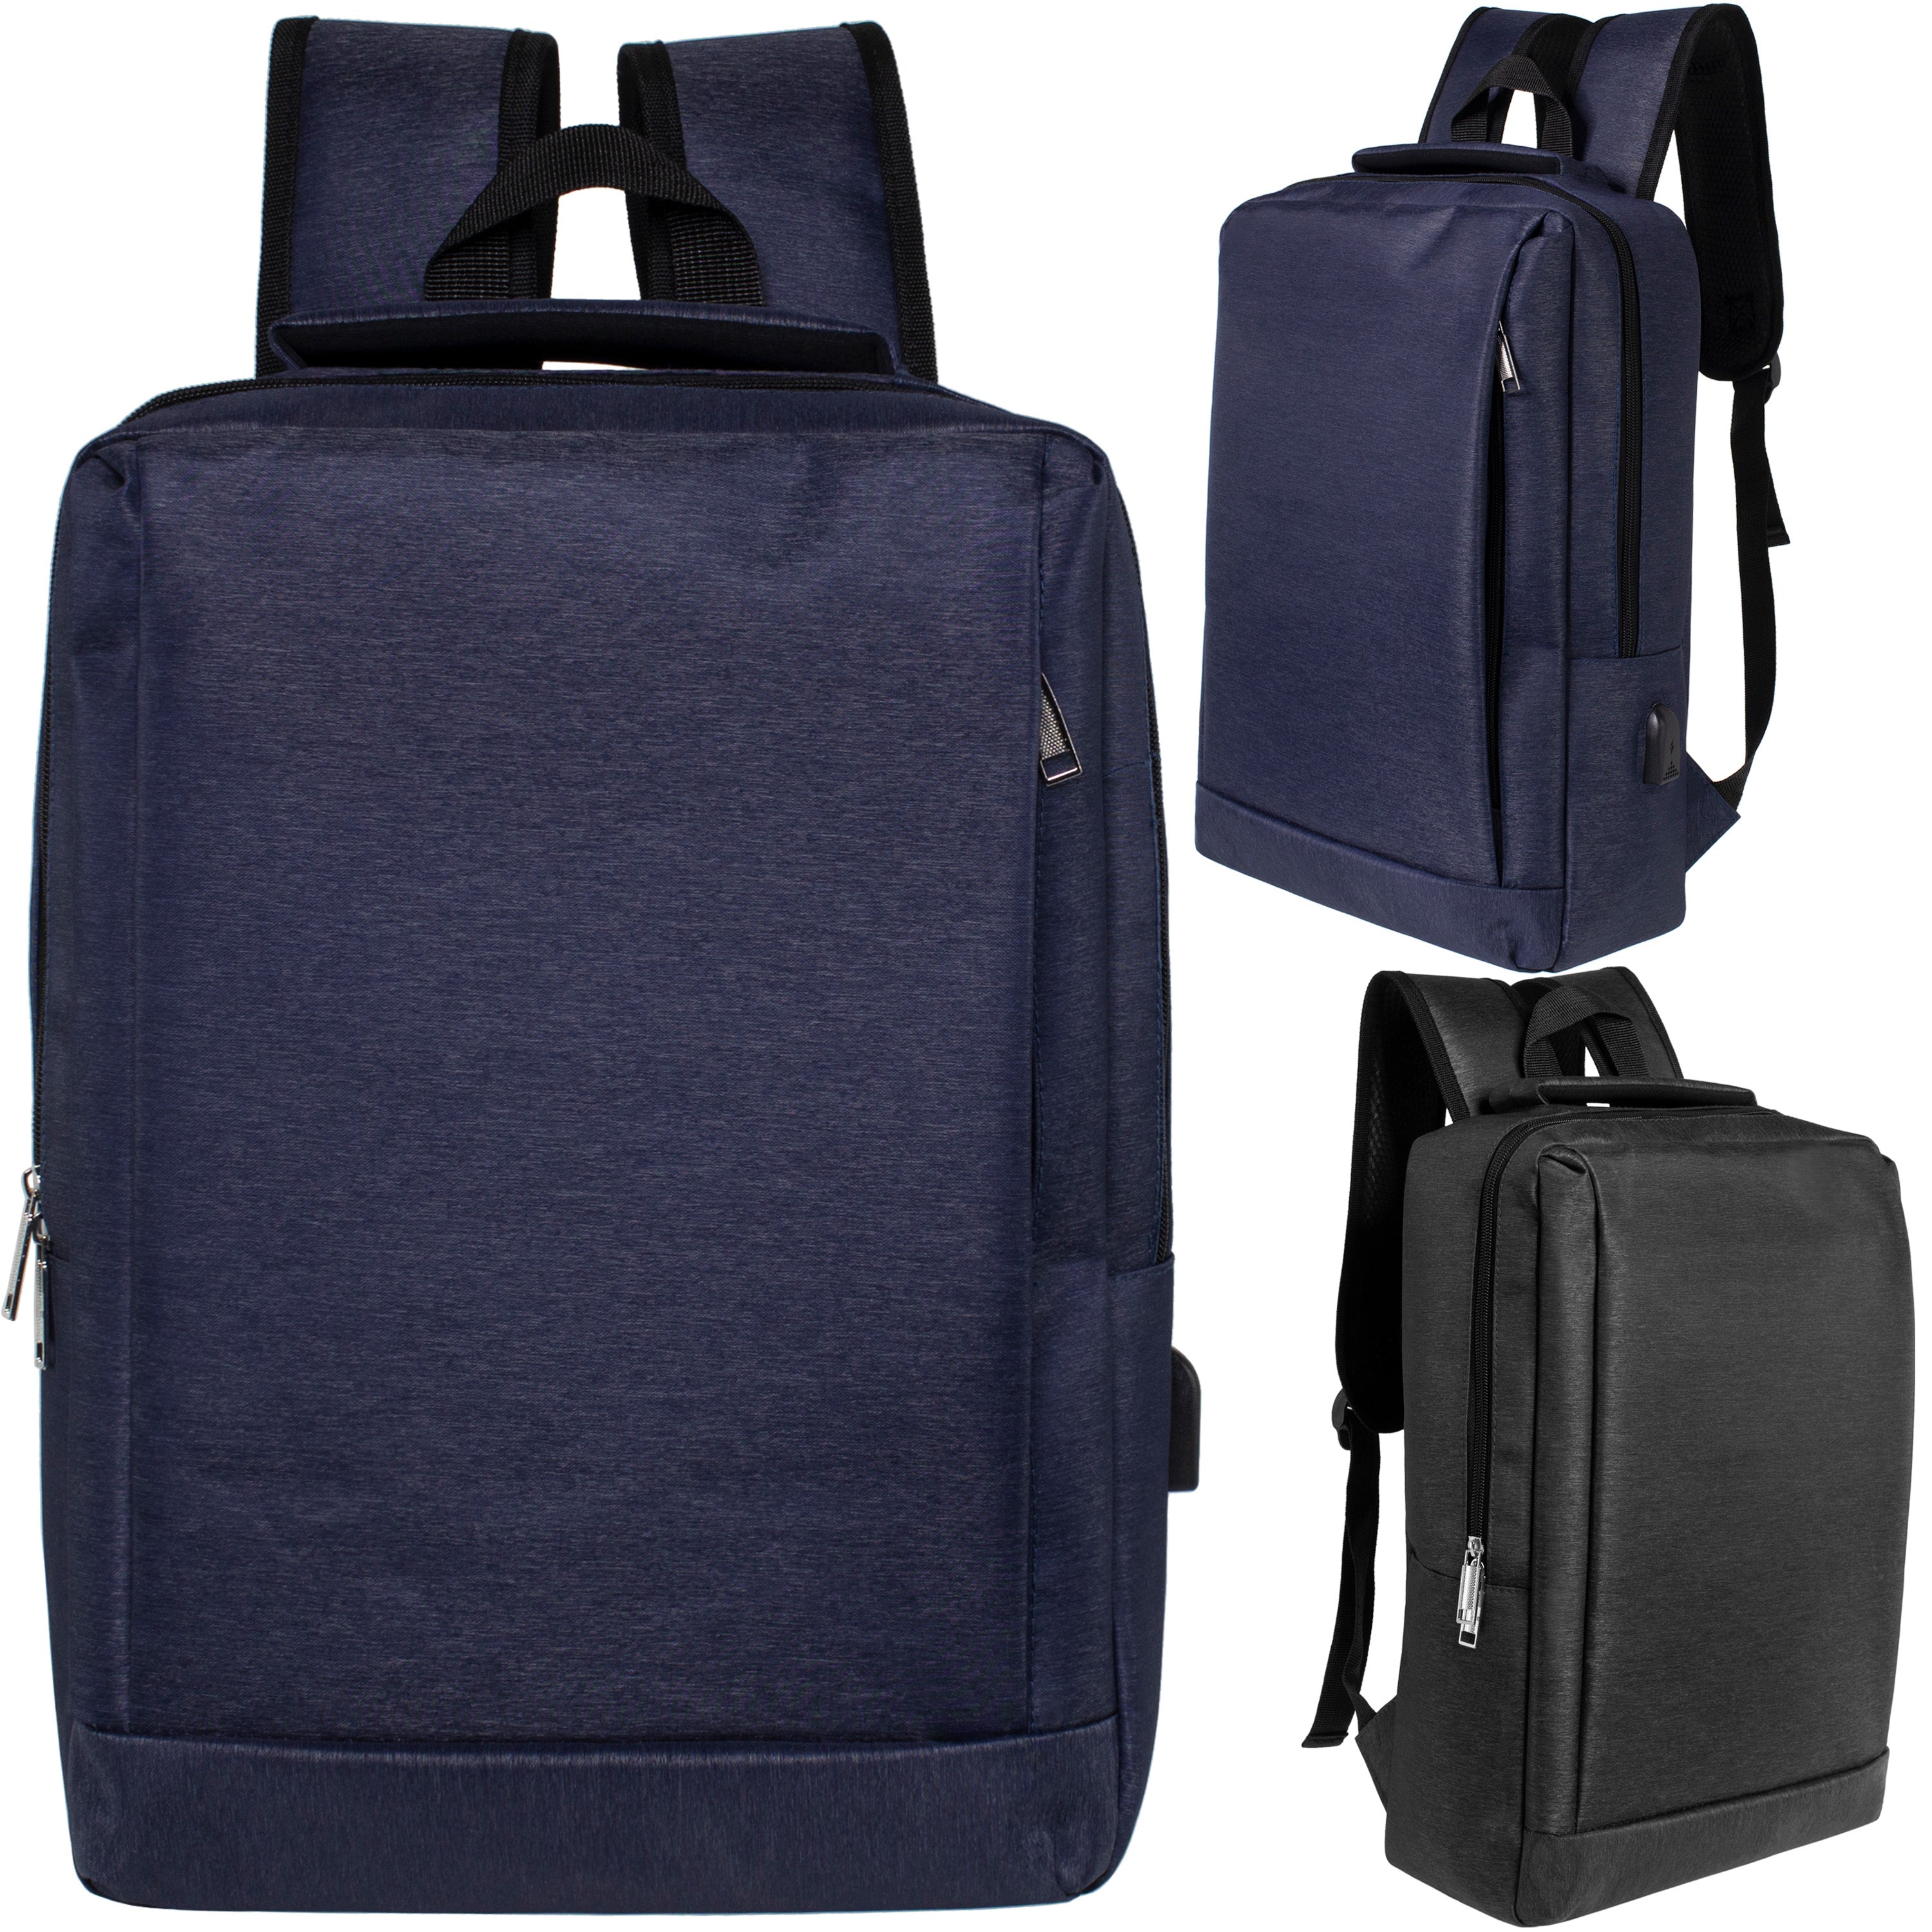 18" Wholesale Premium Backpacks in Black & Navy - Wholesale Bookbags Case of 24